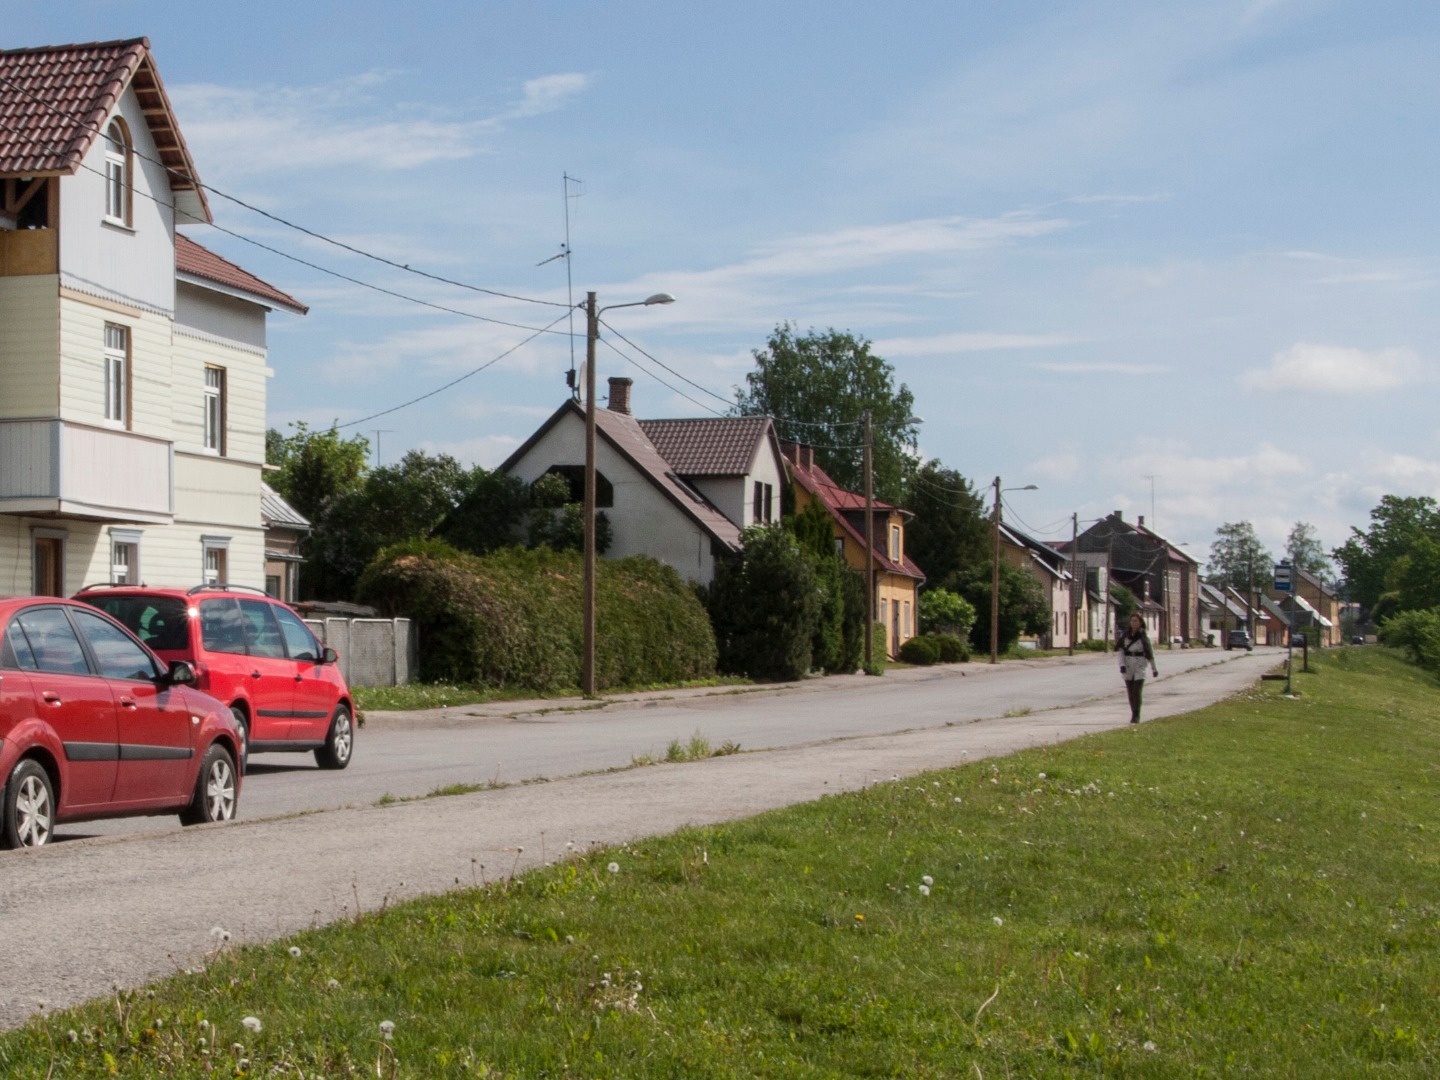 Postcard, Viljandi, Tartu tn, after crossing Aasa Street rephoto